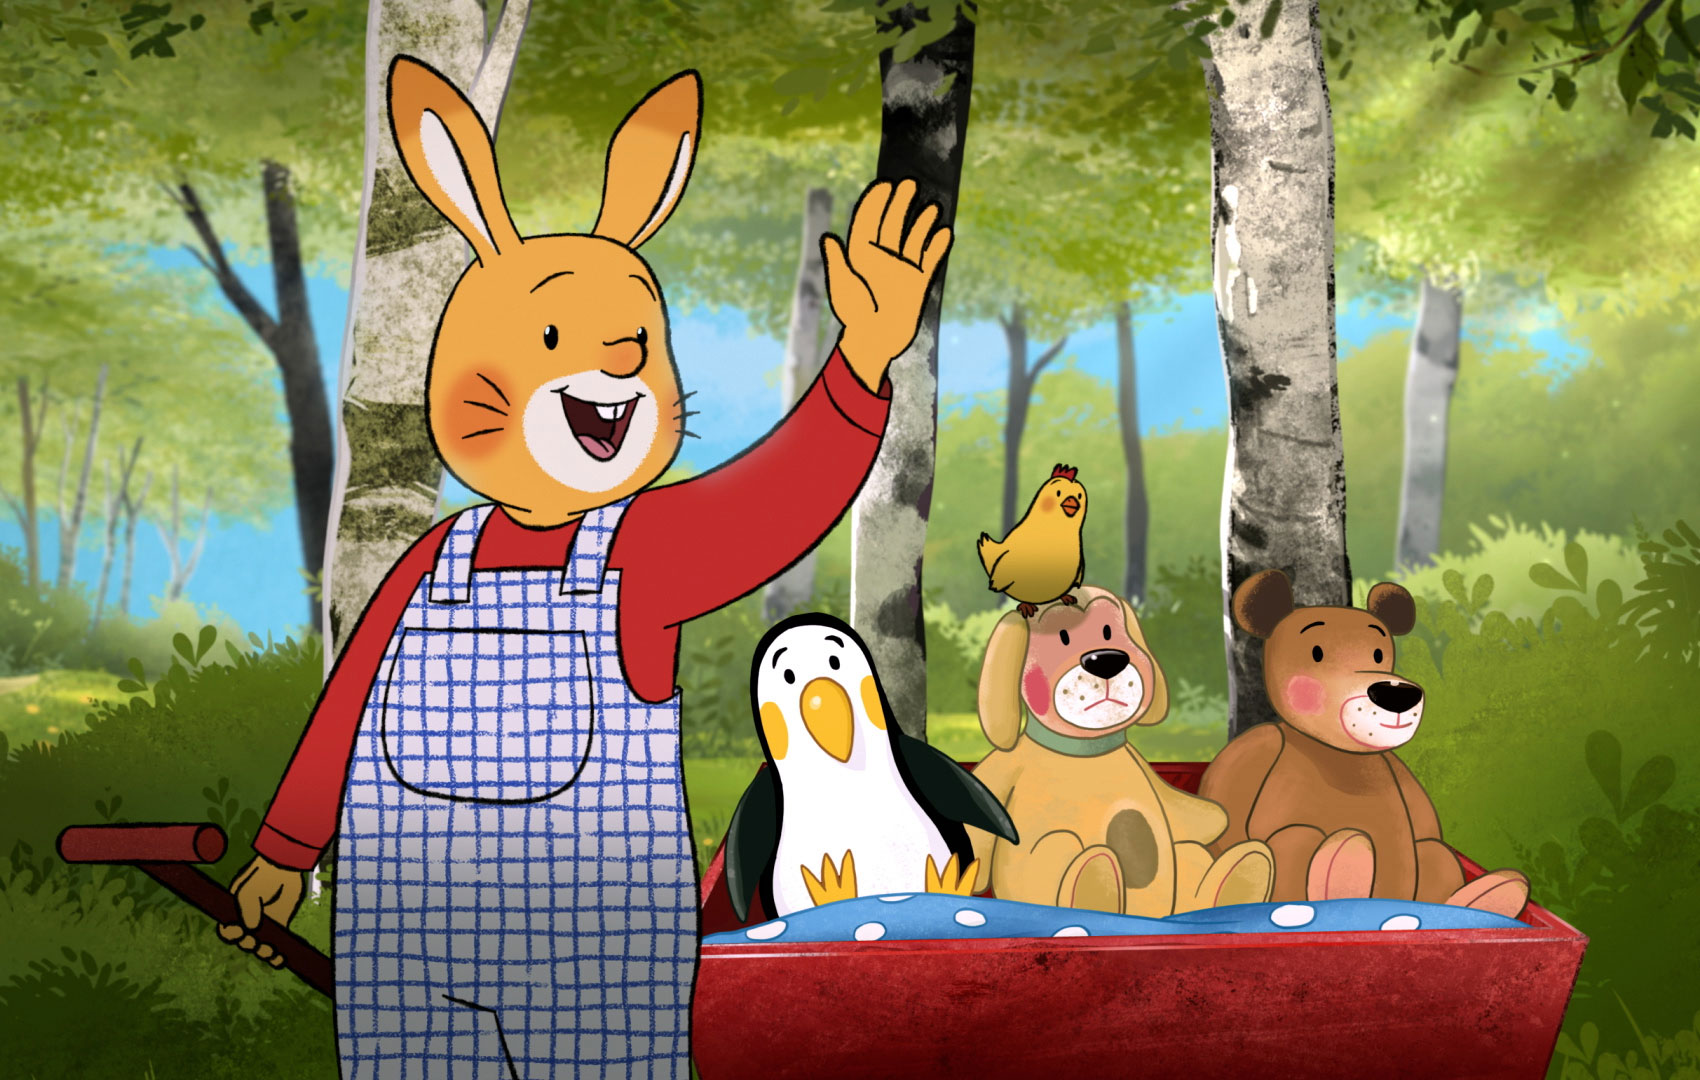 Zeichentrickanimation: Ein Hase in einer Latzhose steht und winkt. Er zieht einen Bollerwagen hinter sich her, in dem ein Pinguin, ein Hund, ein Vogel und ein Bär sitzen.